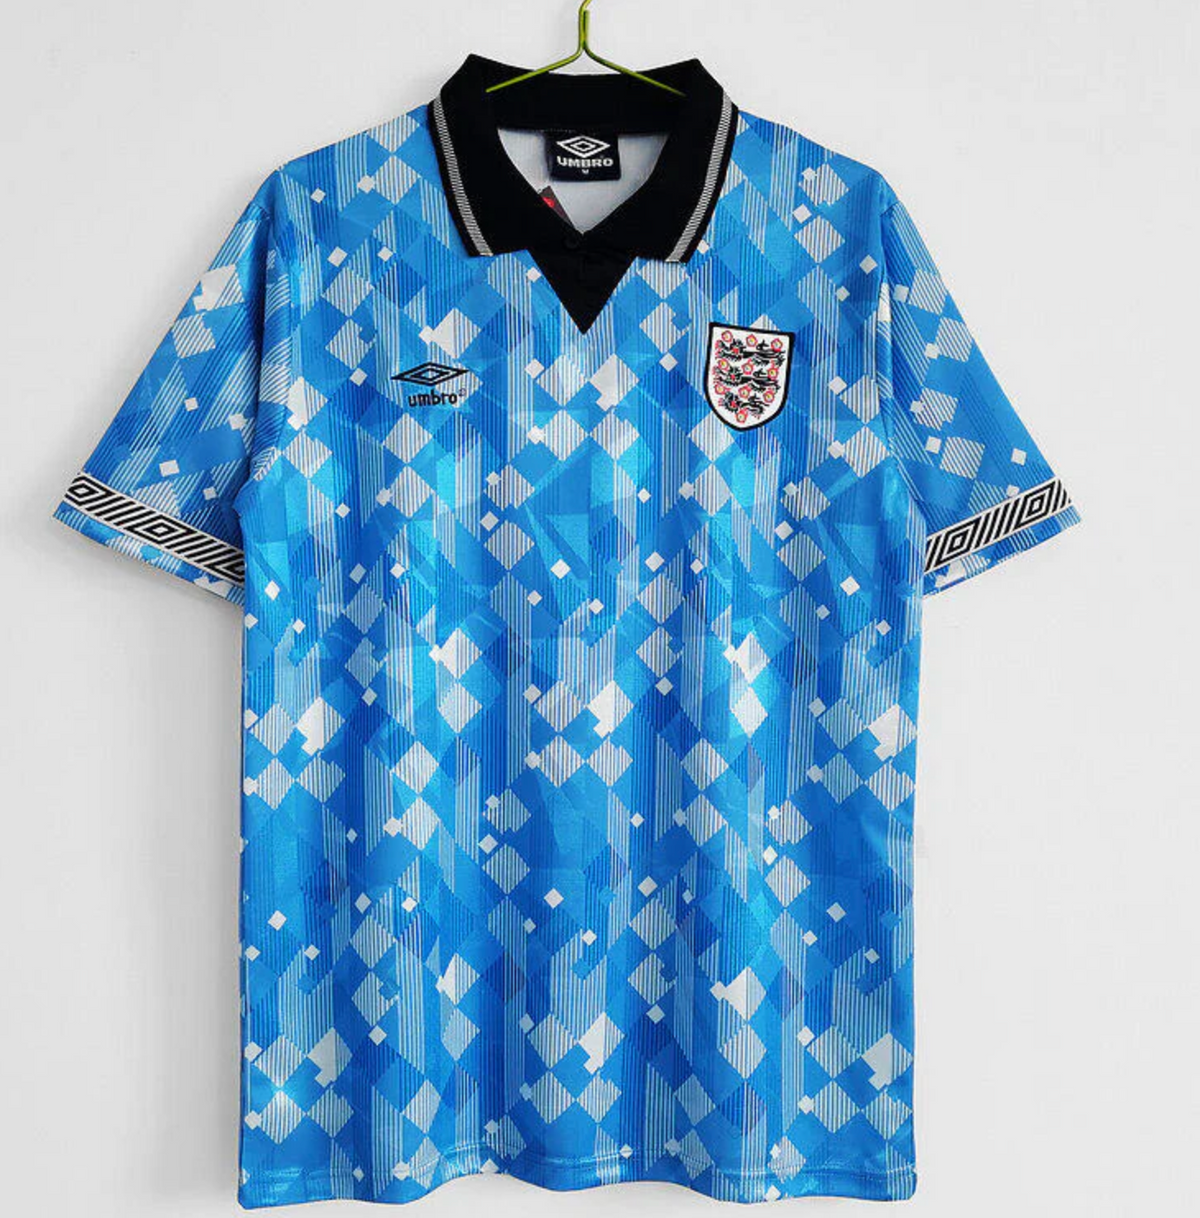 England Euros shirt 1990's away third jersey